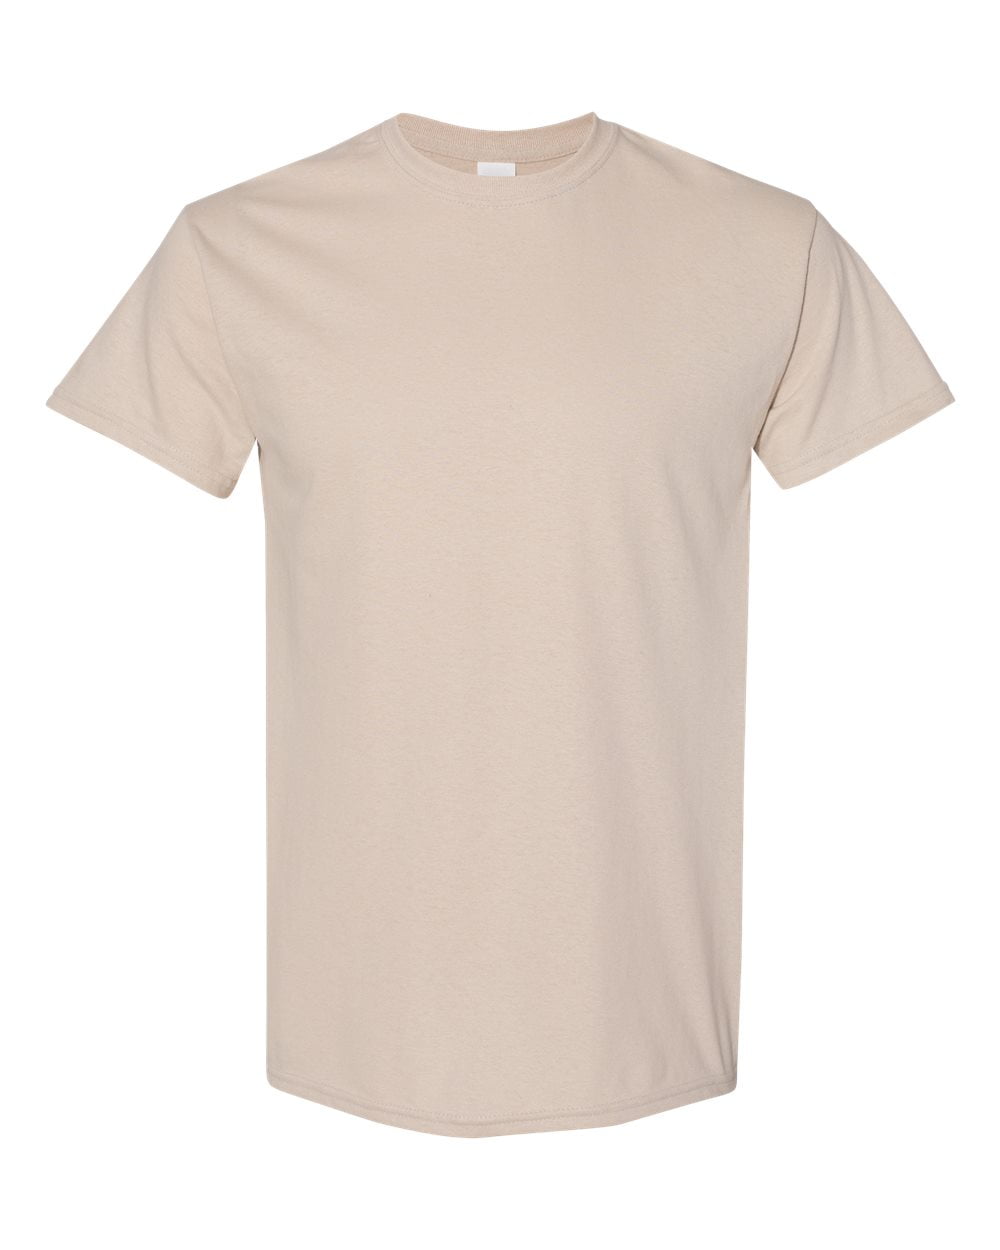 Men Heavy Cotton Colors T-Shirt Color Sand 3X-Large Size -